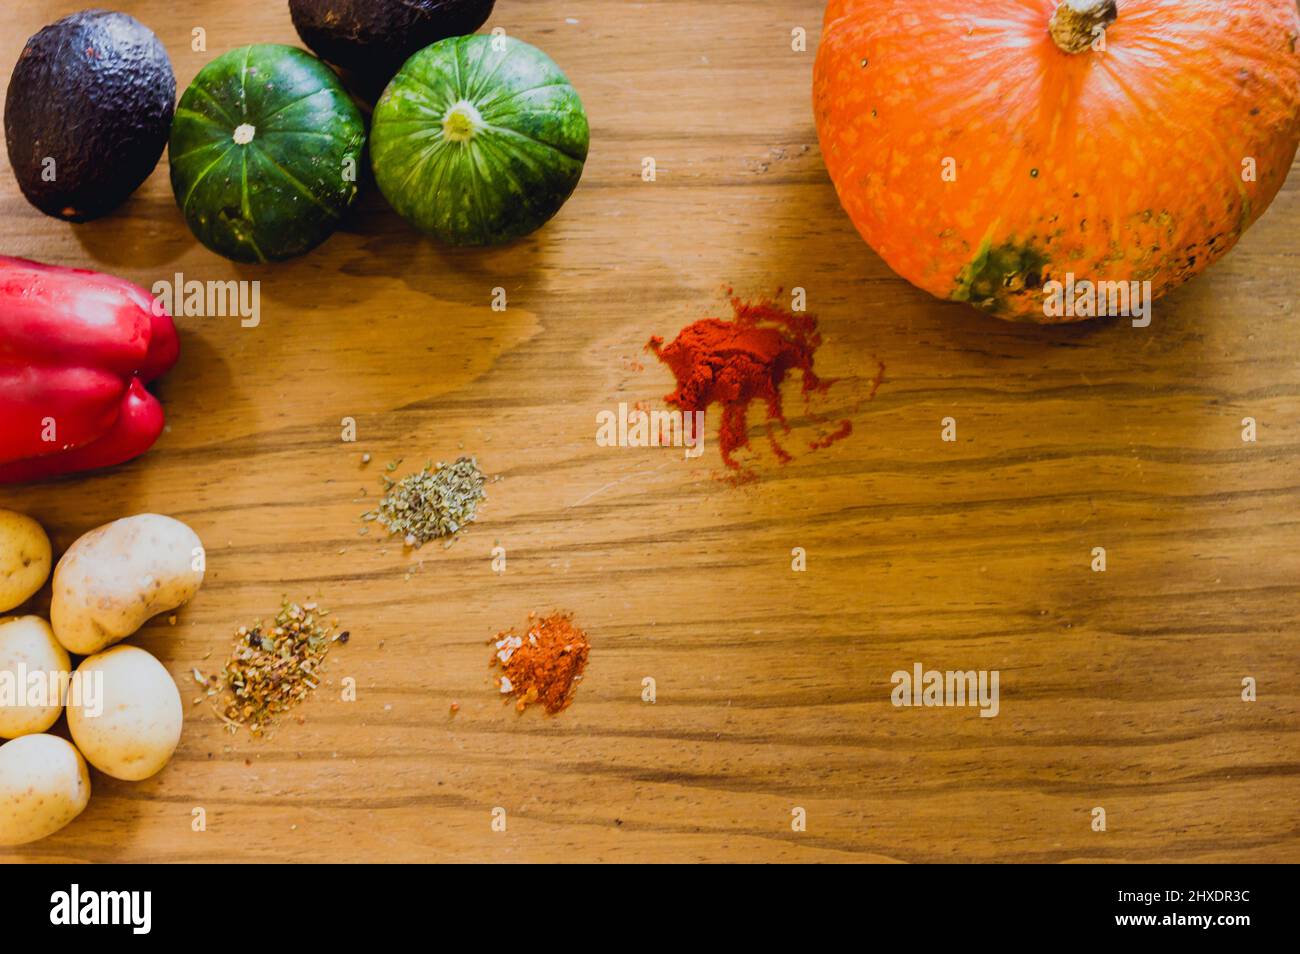 Draufsicht auf Kürbis, Zucchini, Kartoffeln, Paprika, Avocado, Kreuzkümmel, Olegano, Thymian, pflanzliche Zutaten und Gewürze, um eine Suppe auf einem Holzboden zu machen Stockfoto